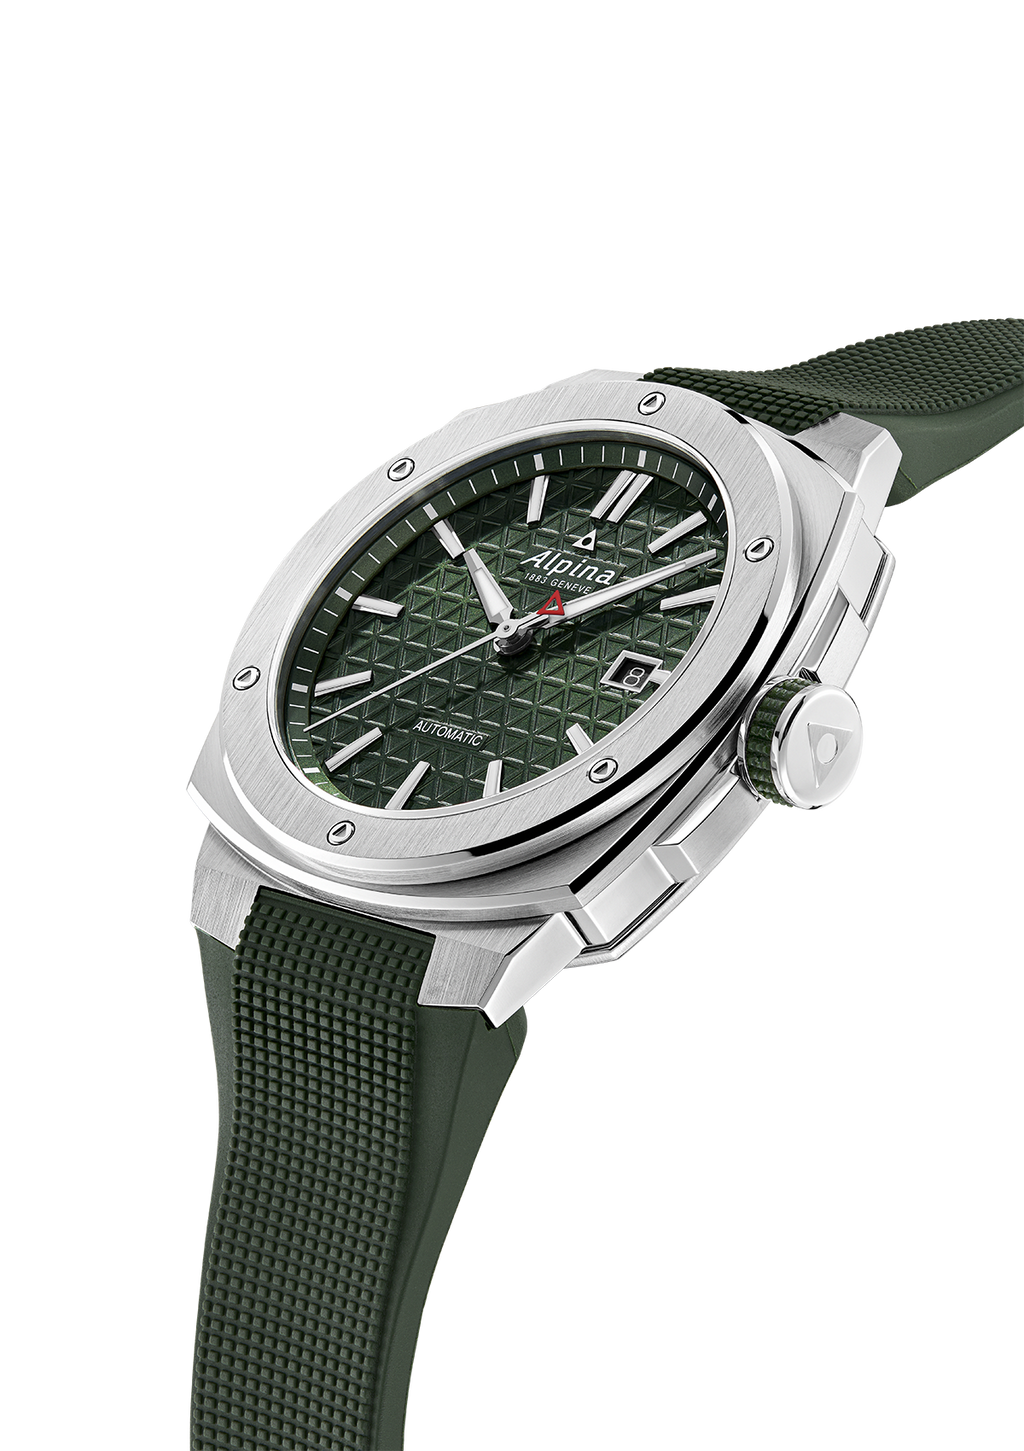 alpina watch movements